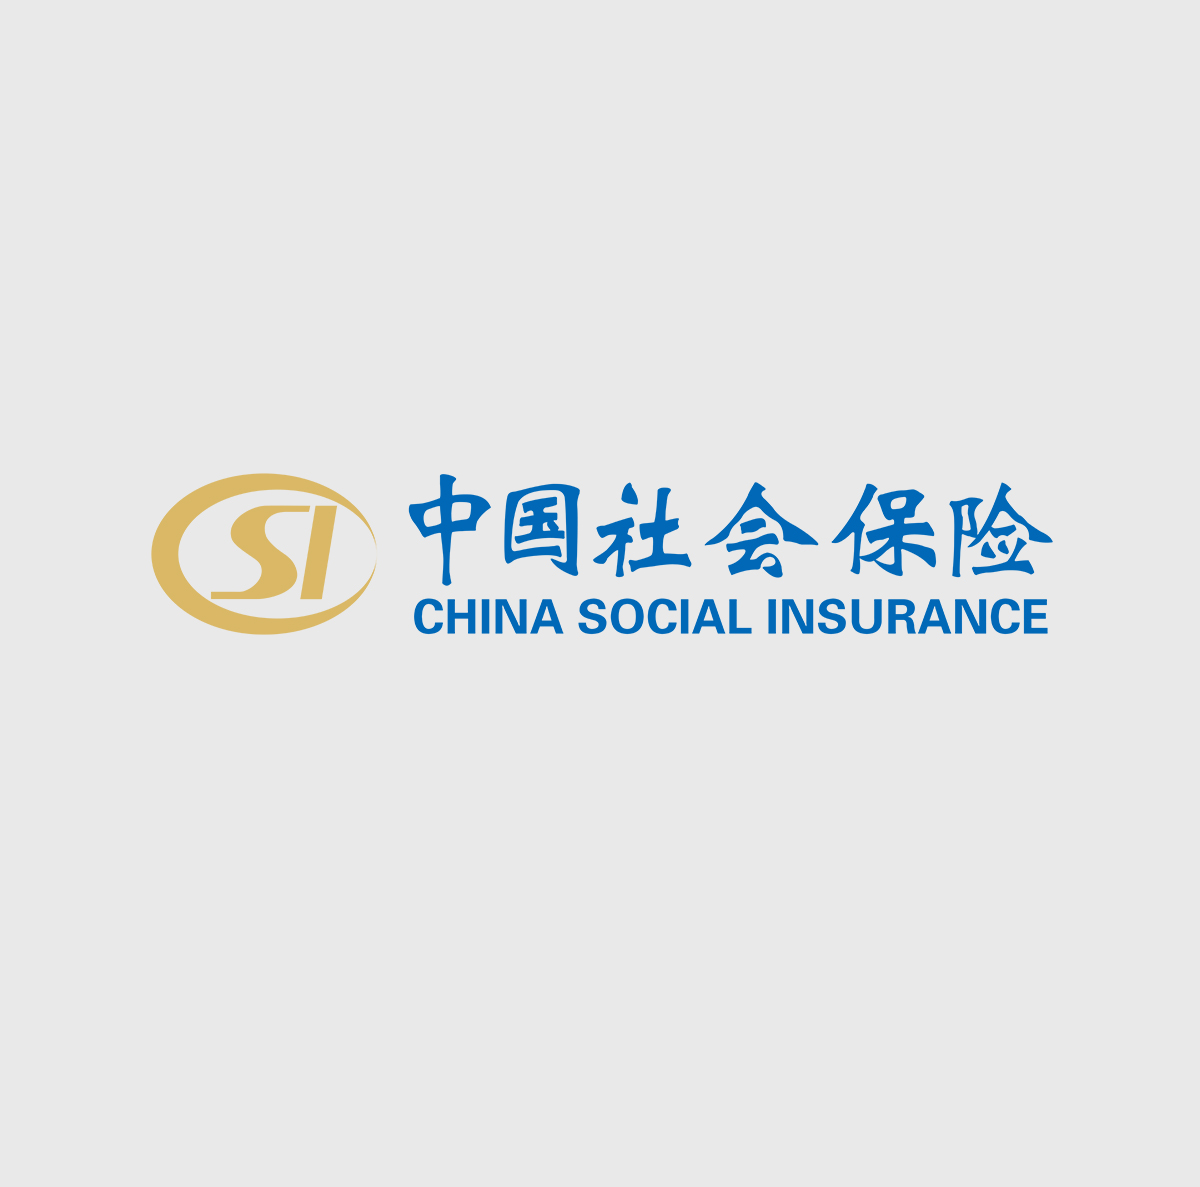 Wacom for Government Public sector esignature China Social Insurance v2